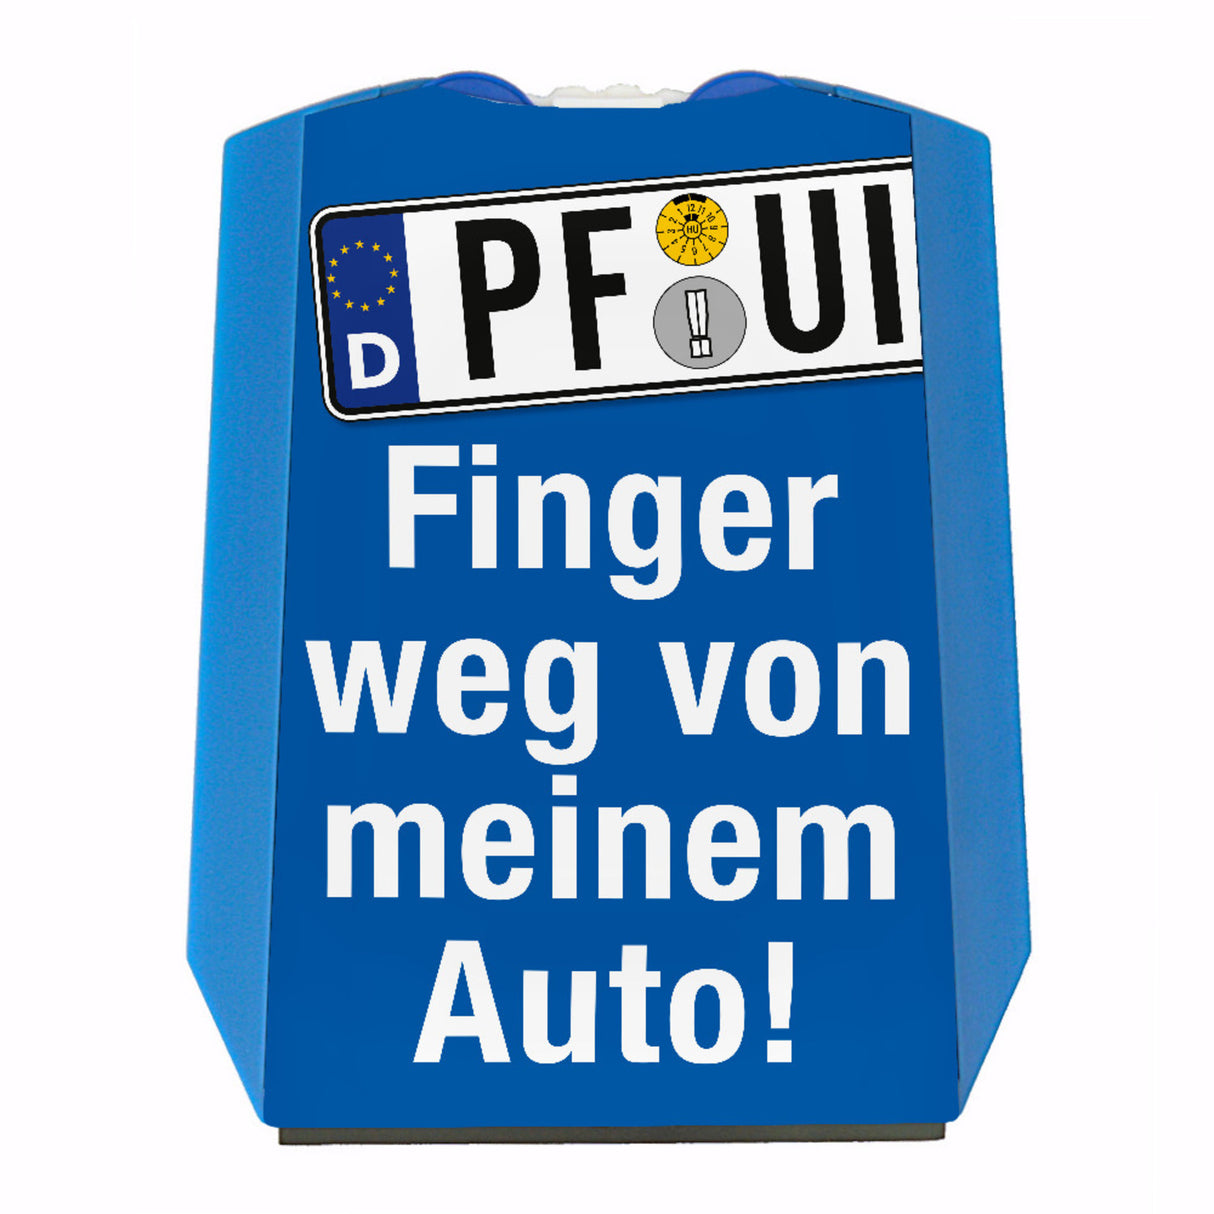 PF-UI Finger weg Auto Parkscheibe, 2 Einkaufswagenchips